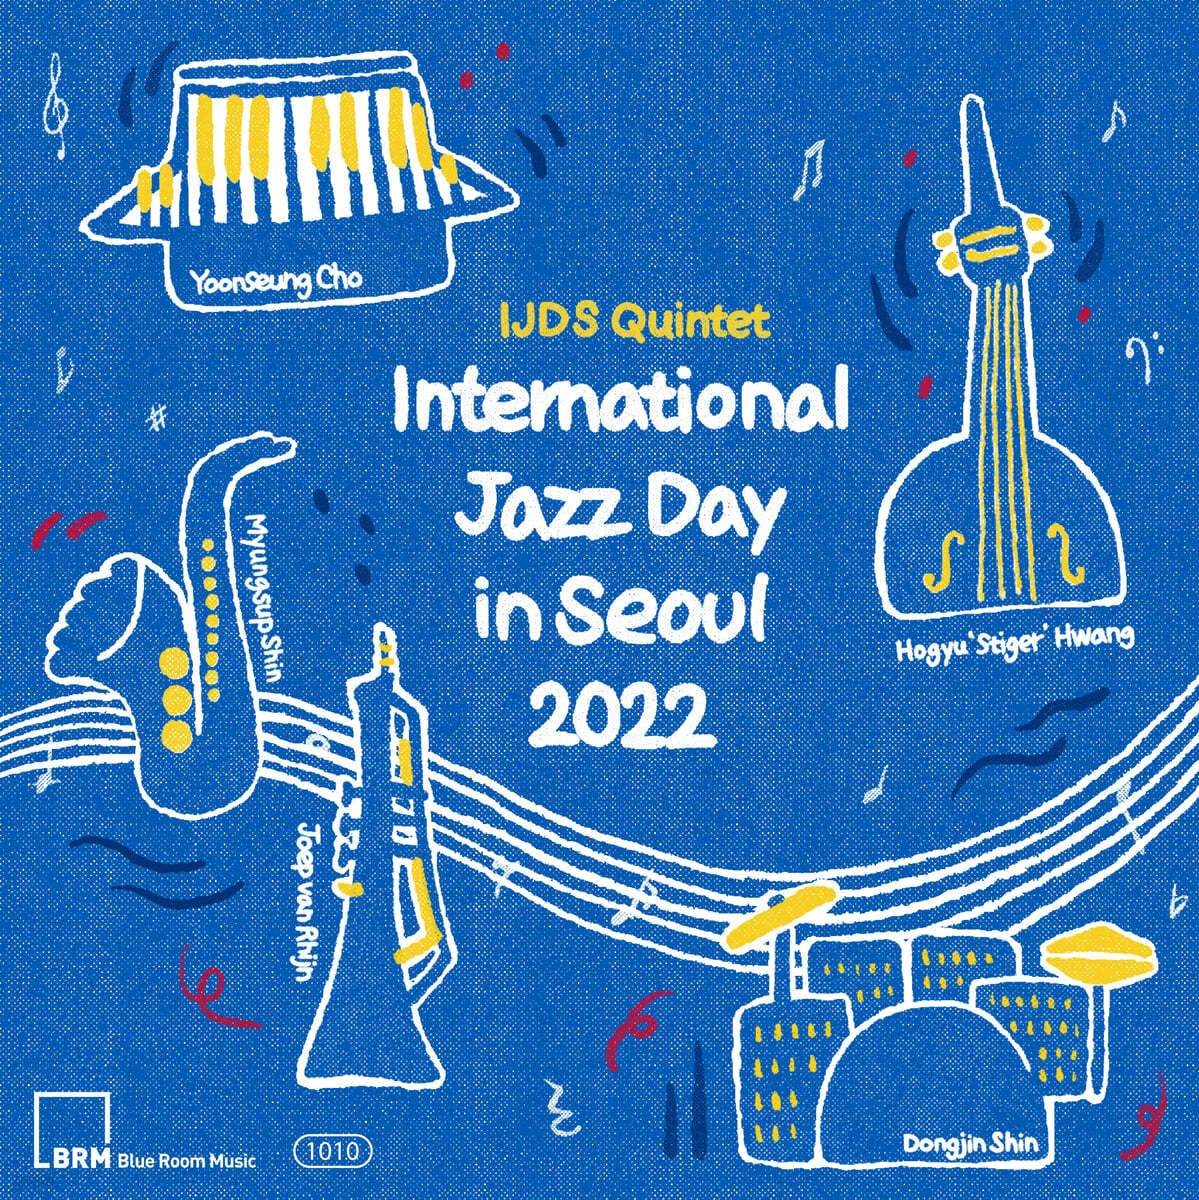 IJDS Quintet (IJDS 퀸텟) - International Jazz Day in Seoul 2022